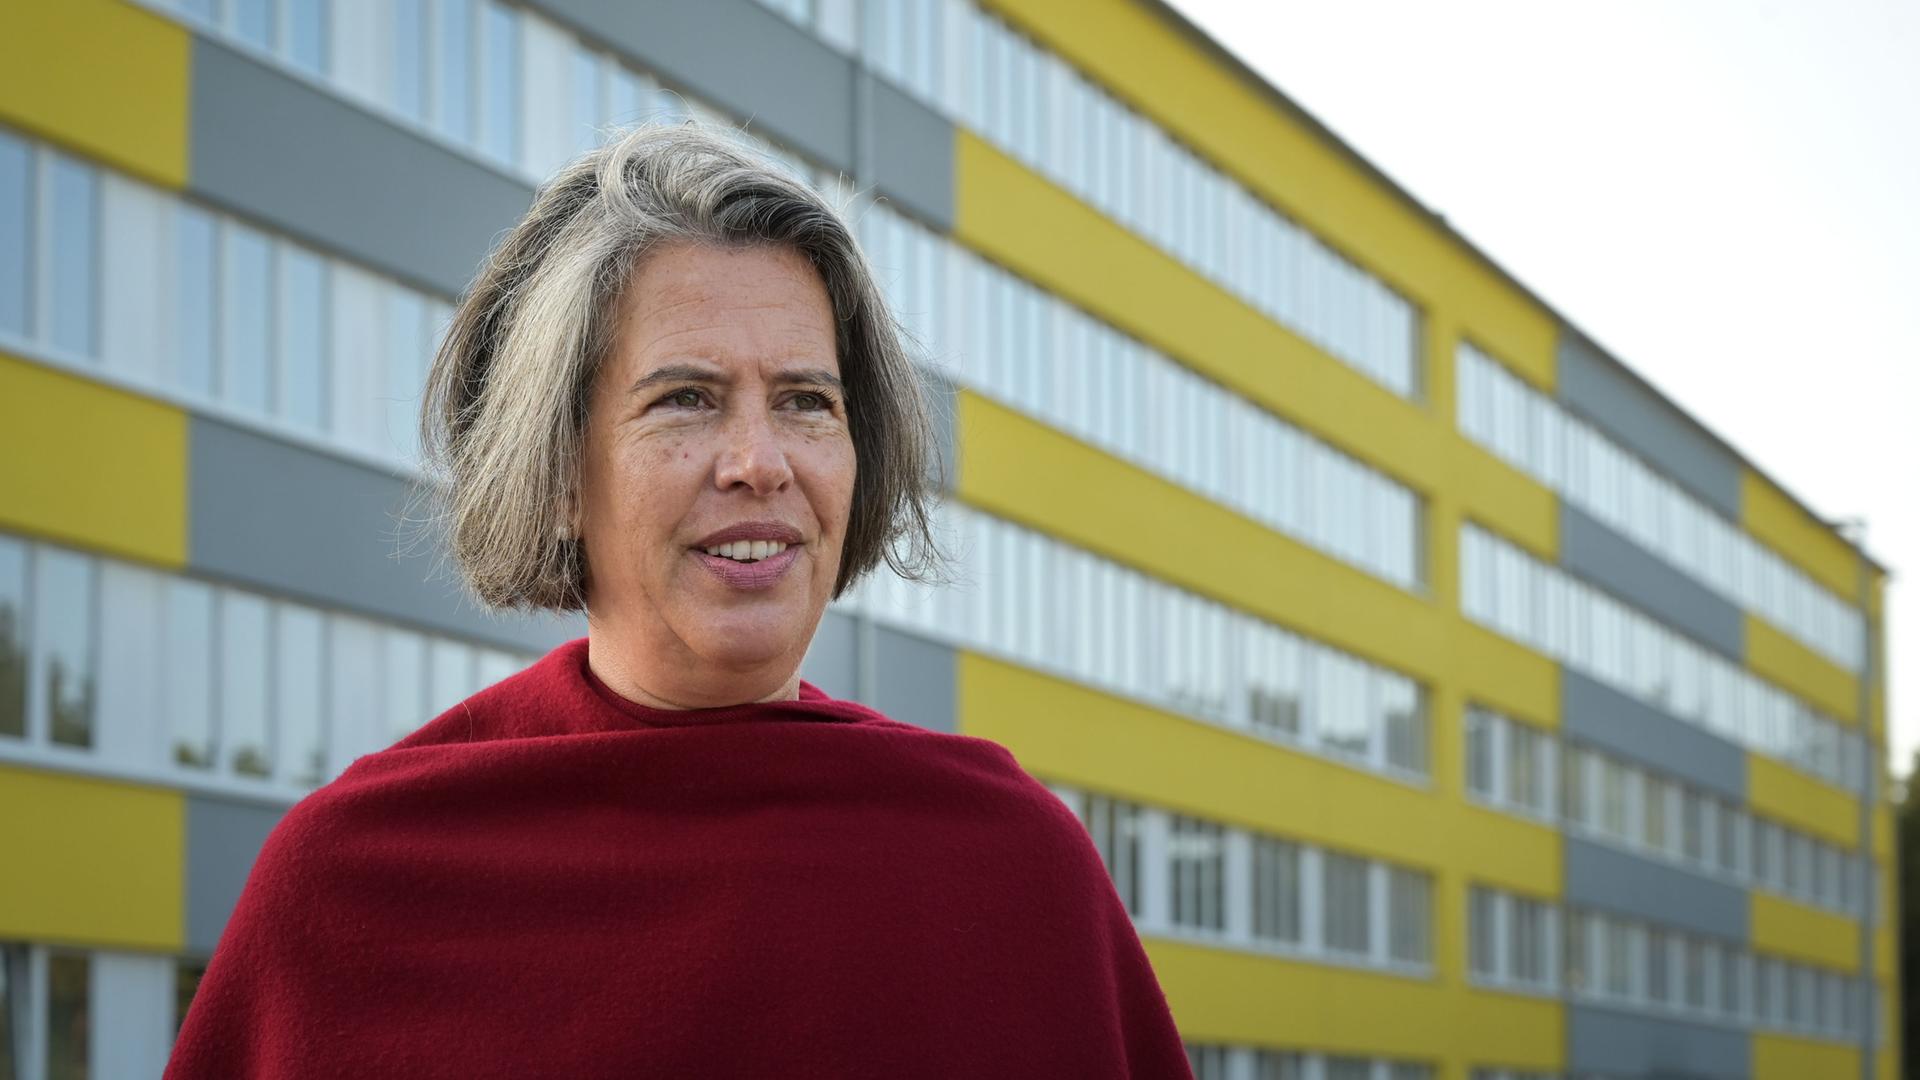 Sachsen-Anhalt, Stendal: Sachsen-Anhalts Innenministerin Tamara Zieschang vor der Landesaufnahmeeinrichtung für Geflüchtete in Stendal.